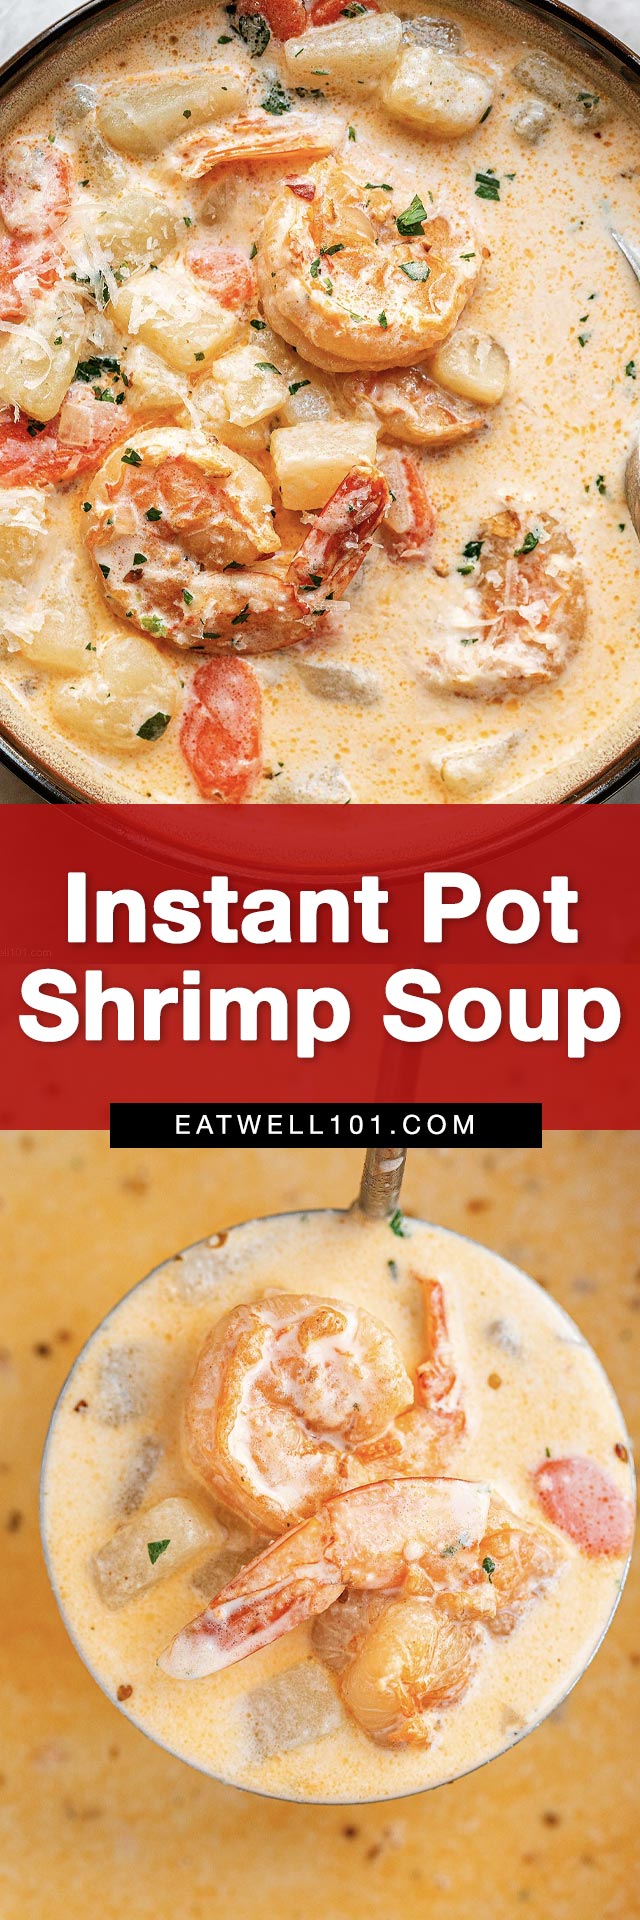 Instant Pot Creamy Shrimp Soup Recipe – Potato Shrimp Chowder Recipe ...